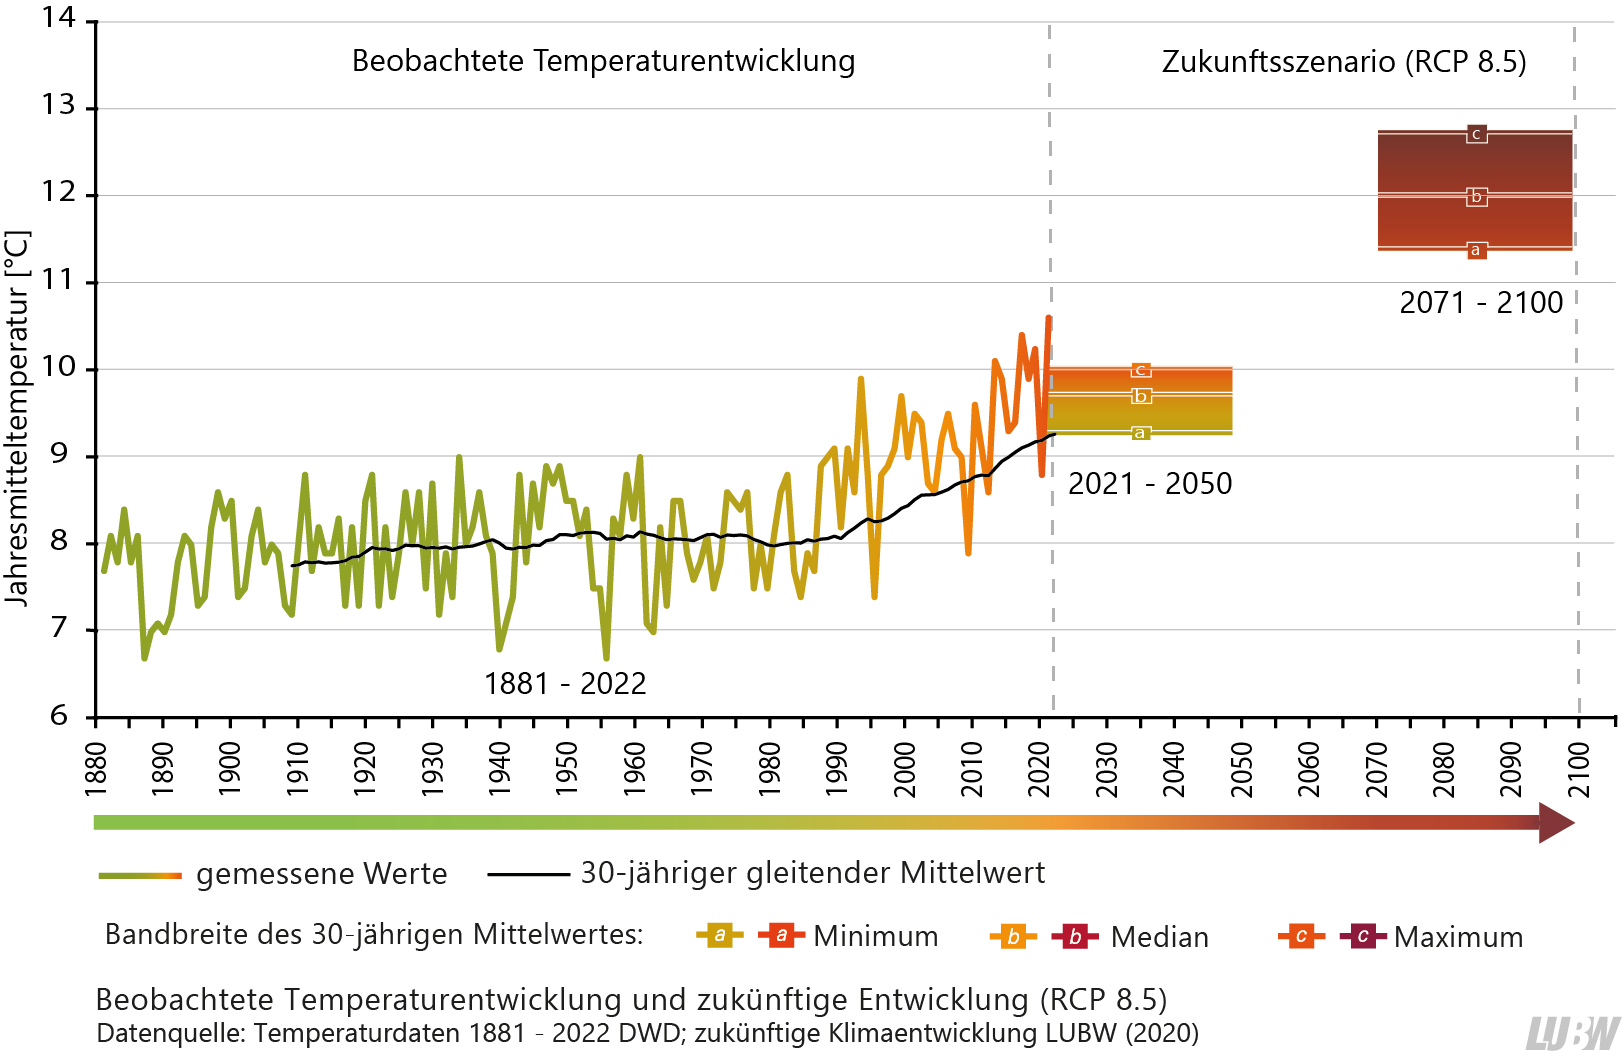 Gezeigt wird eine Grafik mit der beobachteten Temperaturentwicklung bis 2020 und der zukünftigen Entwicklung auf Basis des Szenarios RCP 8.5 für die Zeiträume 2021 bis 2050 (nahe Zukunft) und 2071 bis 2100 (ferne Zukunft). Die Jahresmitteltemperatur ist in Baden-Württemberg in der Vergangenheit, vor allem ab den 1990er-Jahren angestiegen. In Zukunft wird sie laut der Klimamodellrechnungen weiter ansteigen.